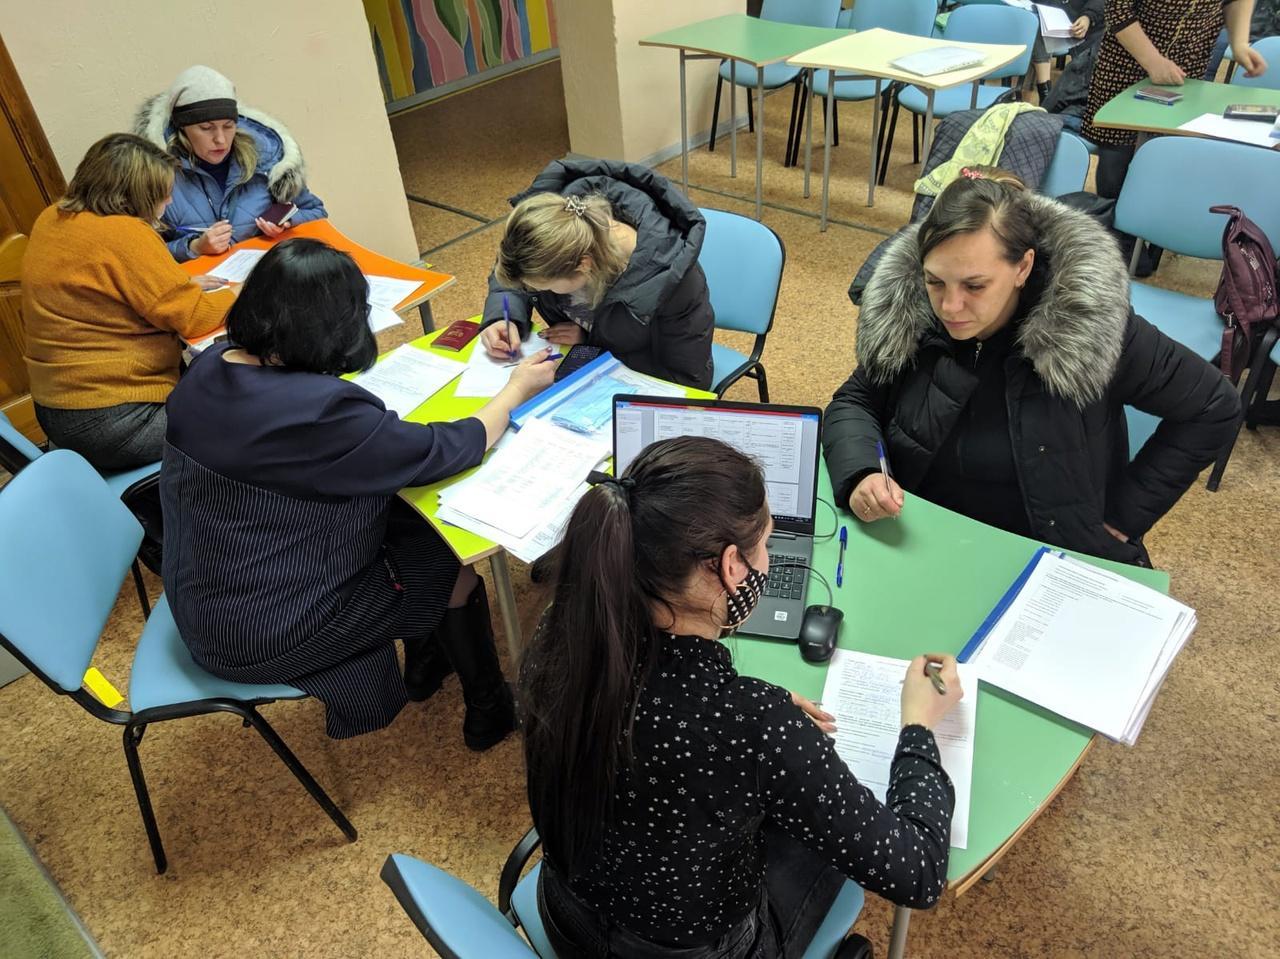 Орловские работодатели предлагают вакансии гражданам, вынужденно прибывшим в регион с территорий Украины и Донбасса